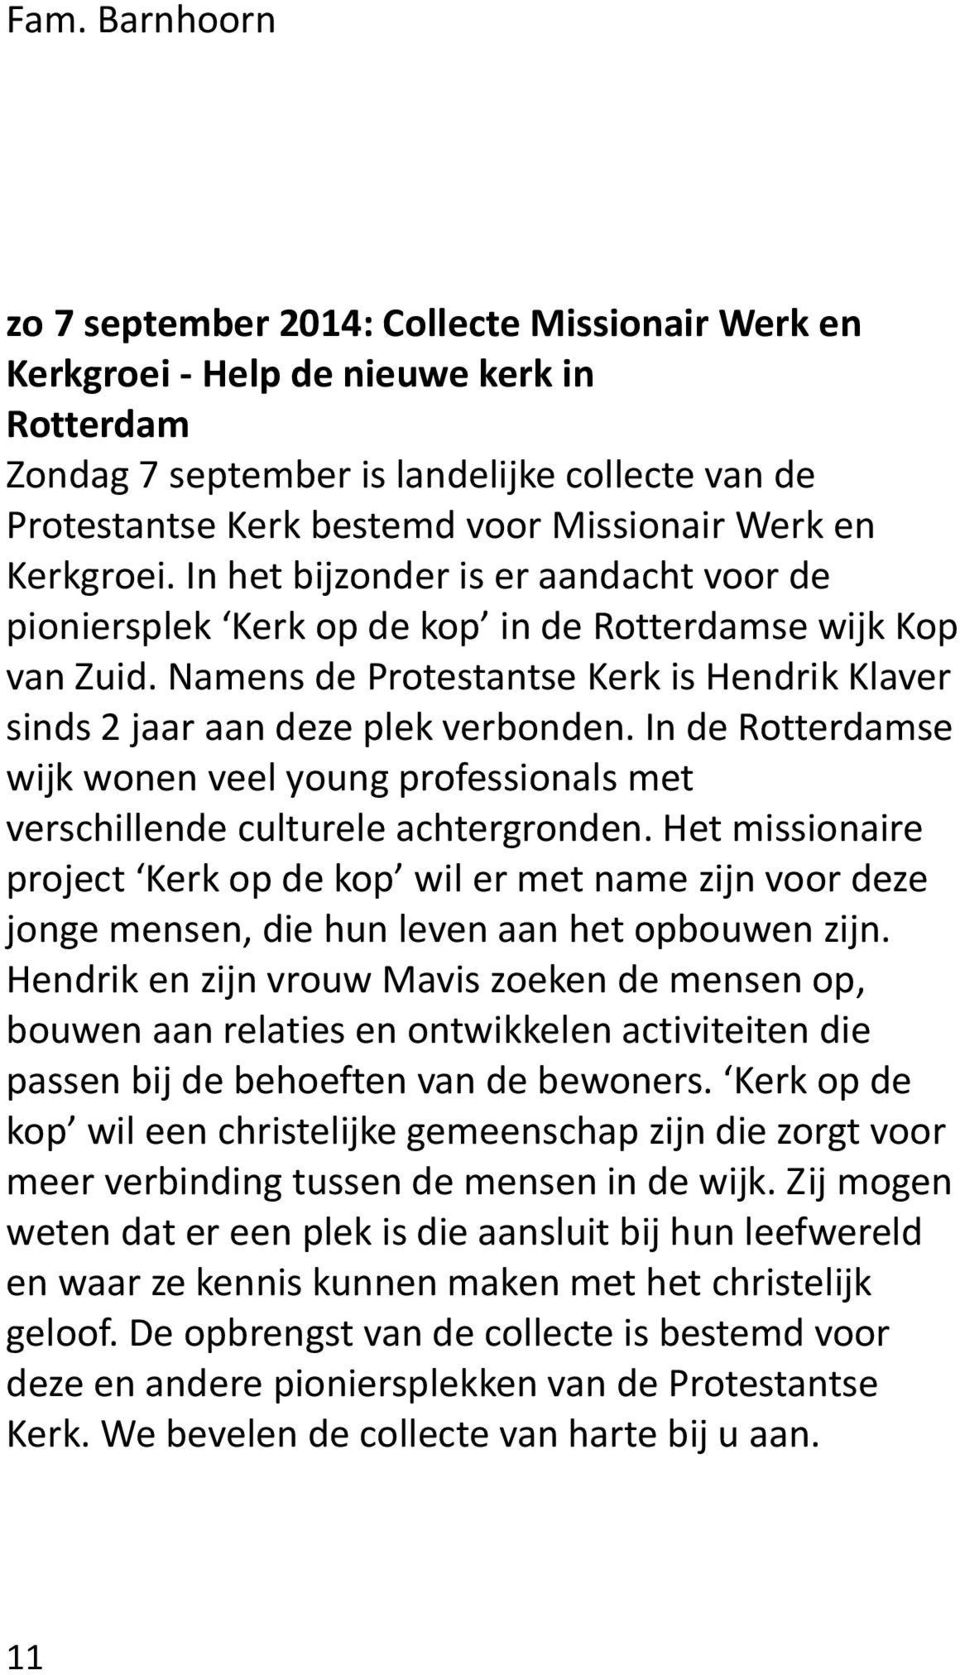 Namens de Protestantse Kerk is Hendrik Klaver sinds 2 jaar aan deze plek verbonden. In de Rotterdamse wijk wonen veel young professionals met verschillende culturele achtergronden.